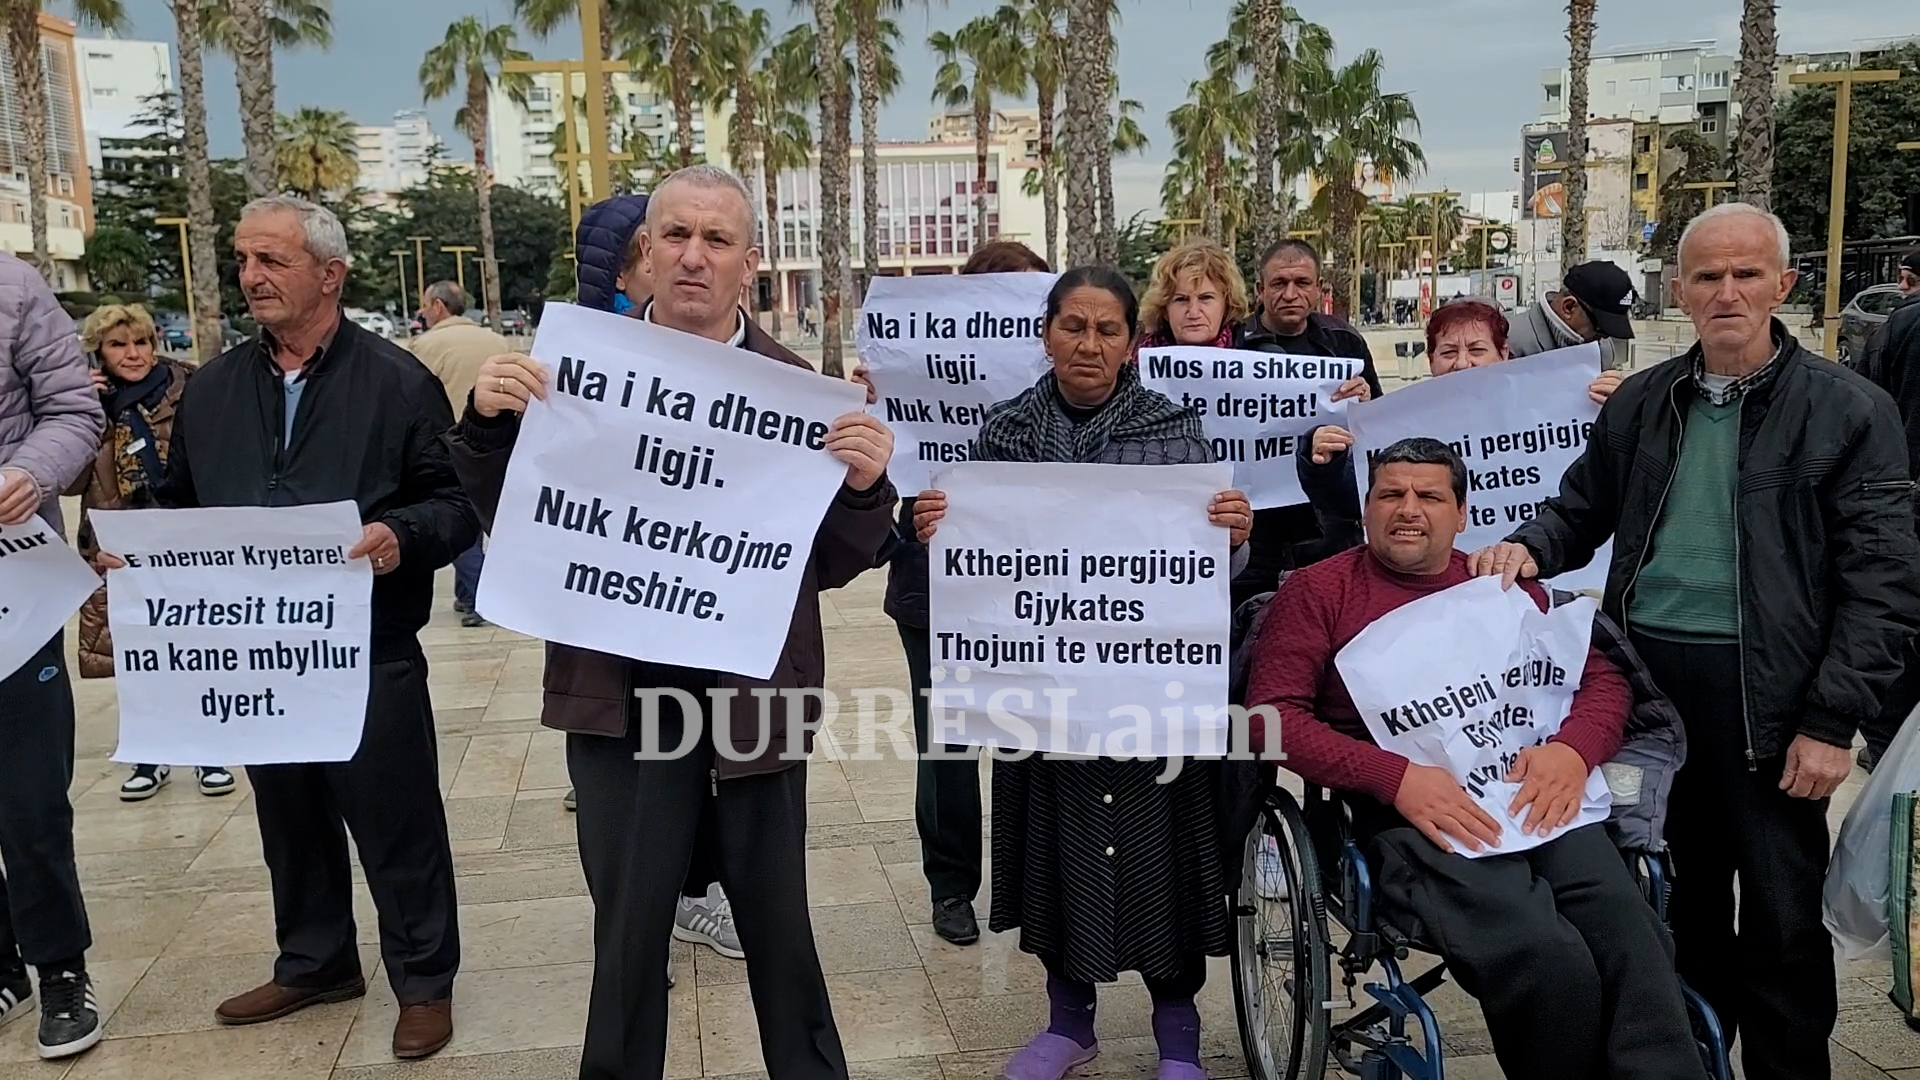 Invalidët sërish protestë para bashkisë Durrës, nënkryetari Jani: Do i japim zgjidhje problemit! (VIDEO)